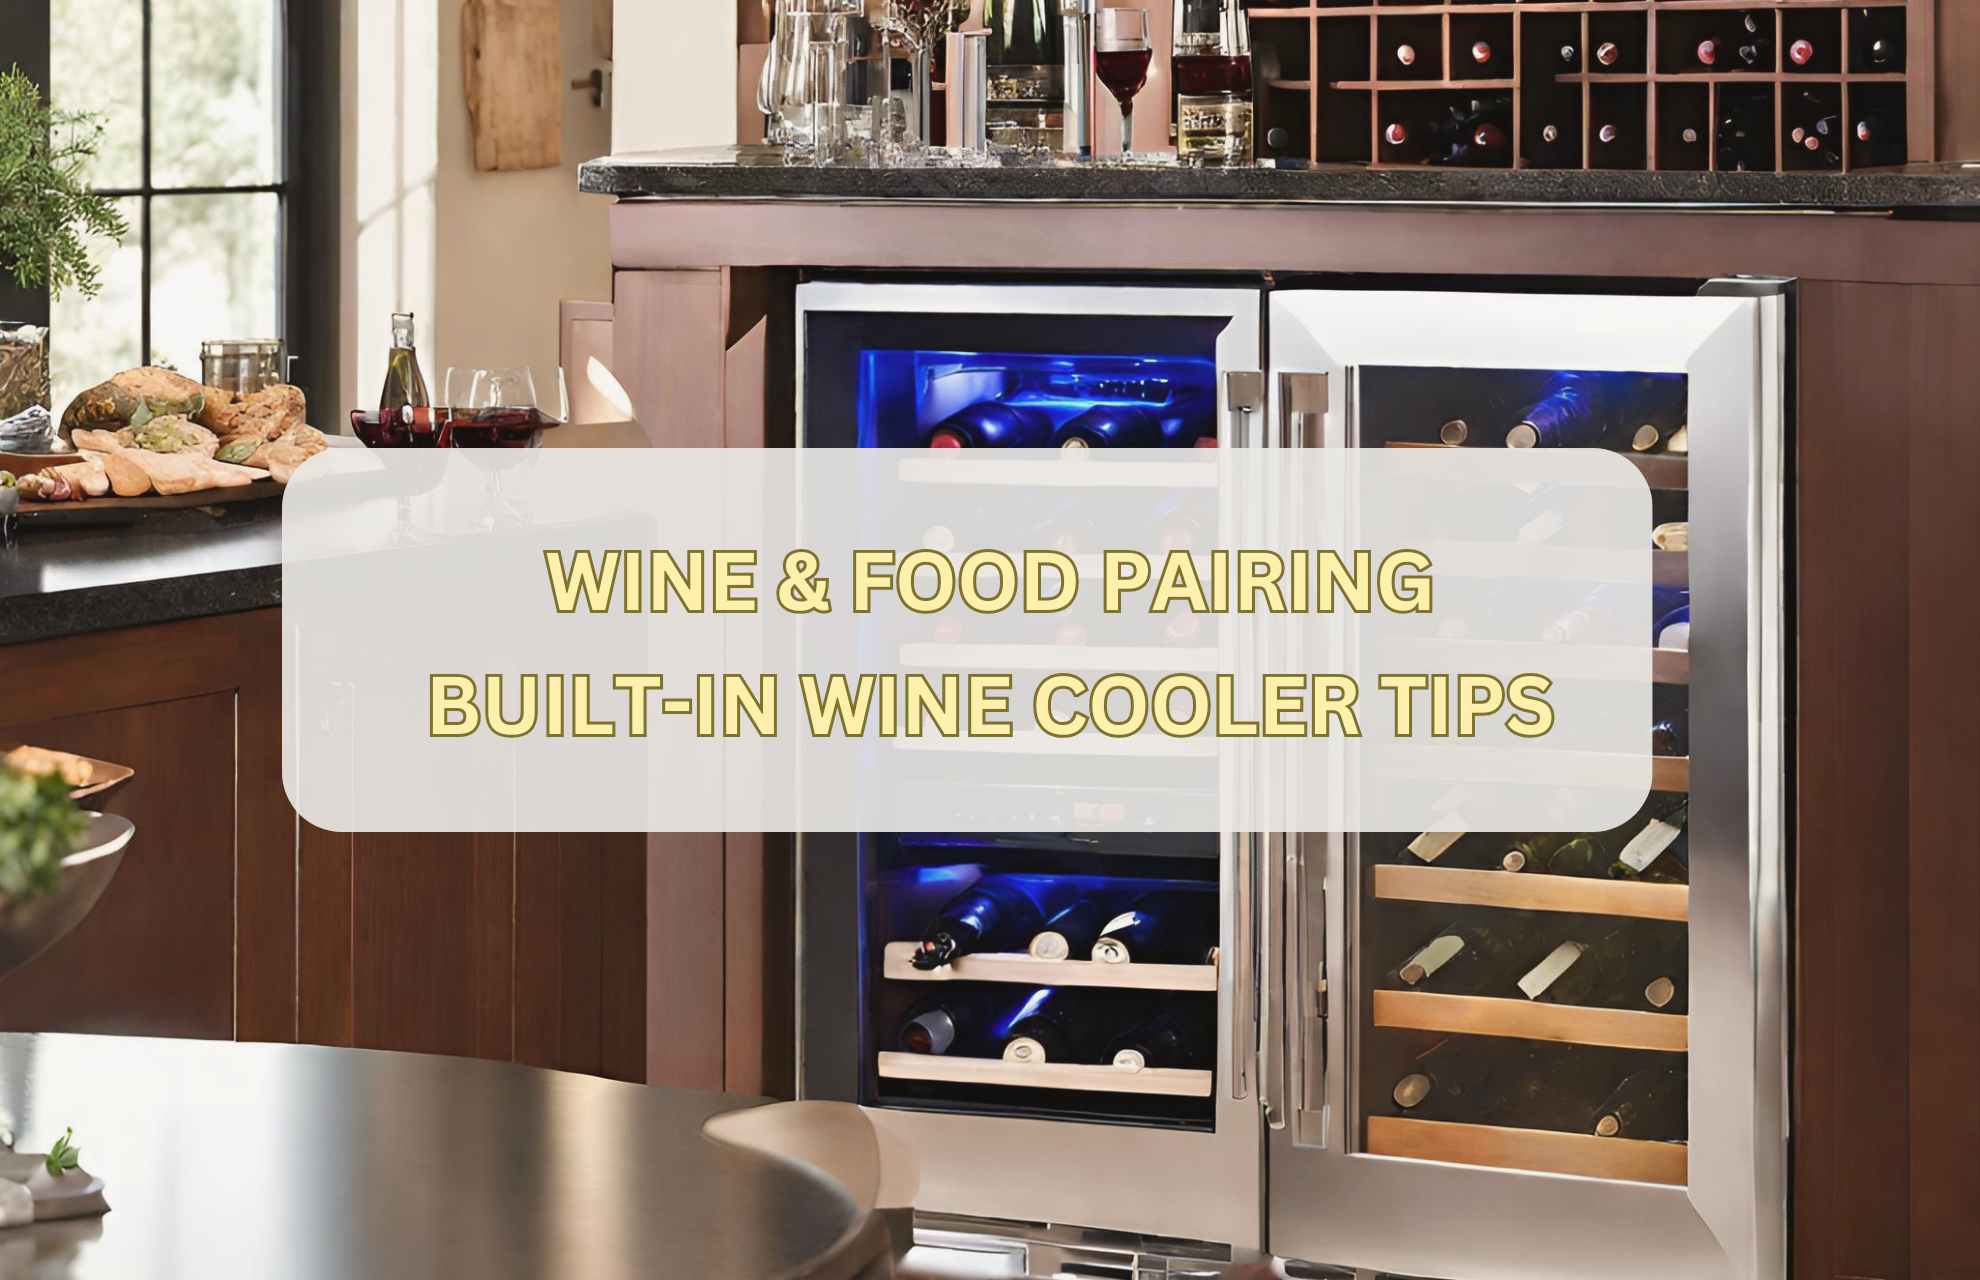 WINE & FOOD PAIRING: BUILT-IN WINE COOLER TIPS